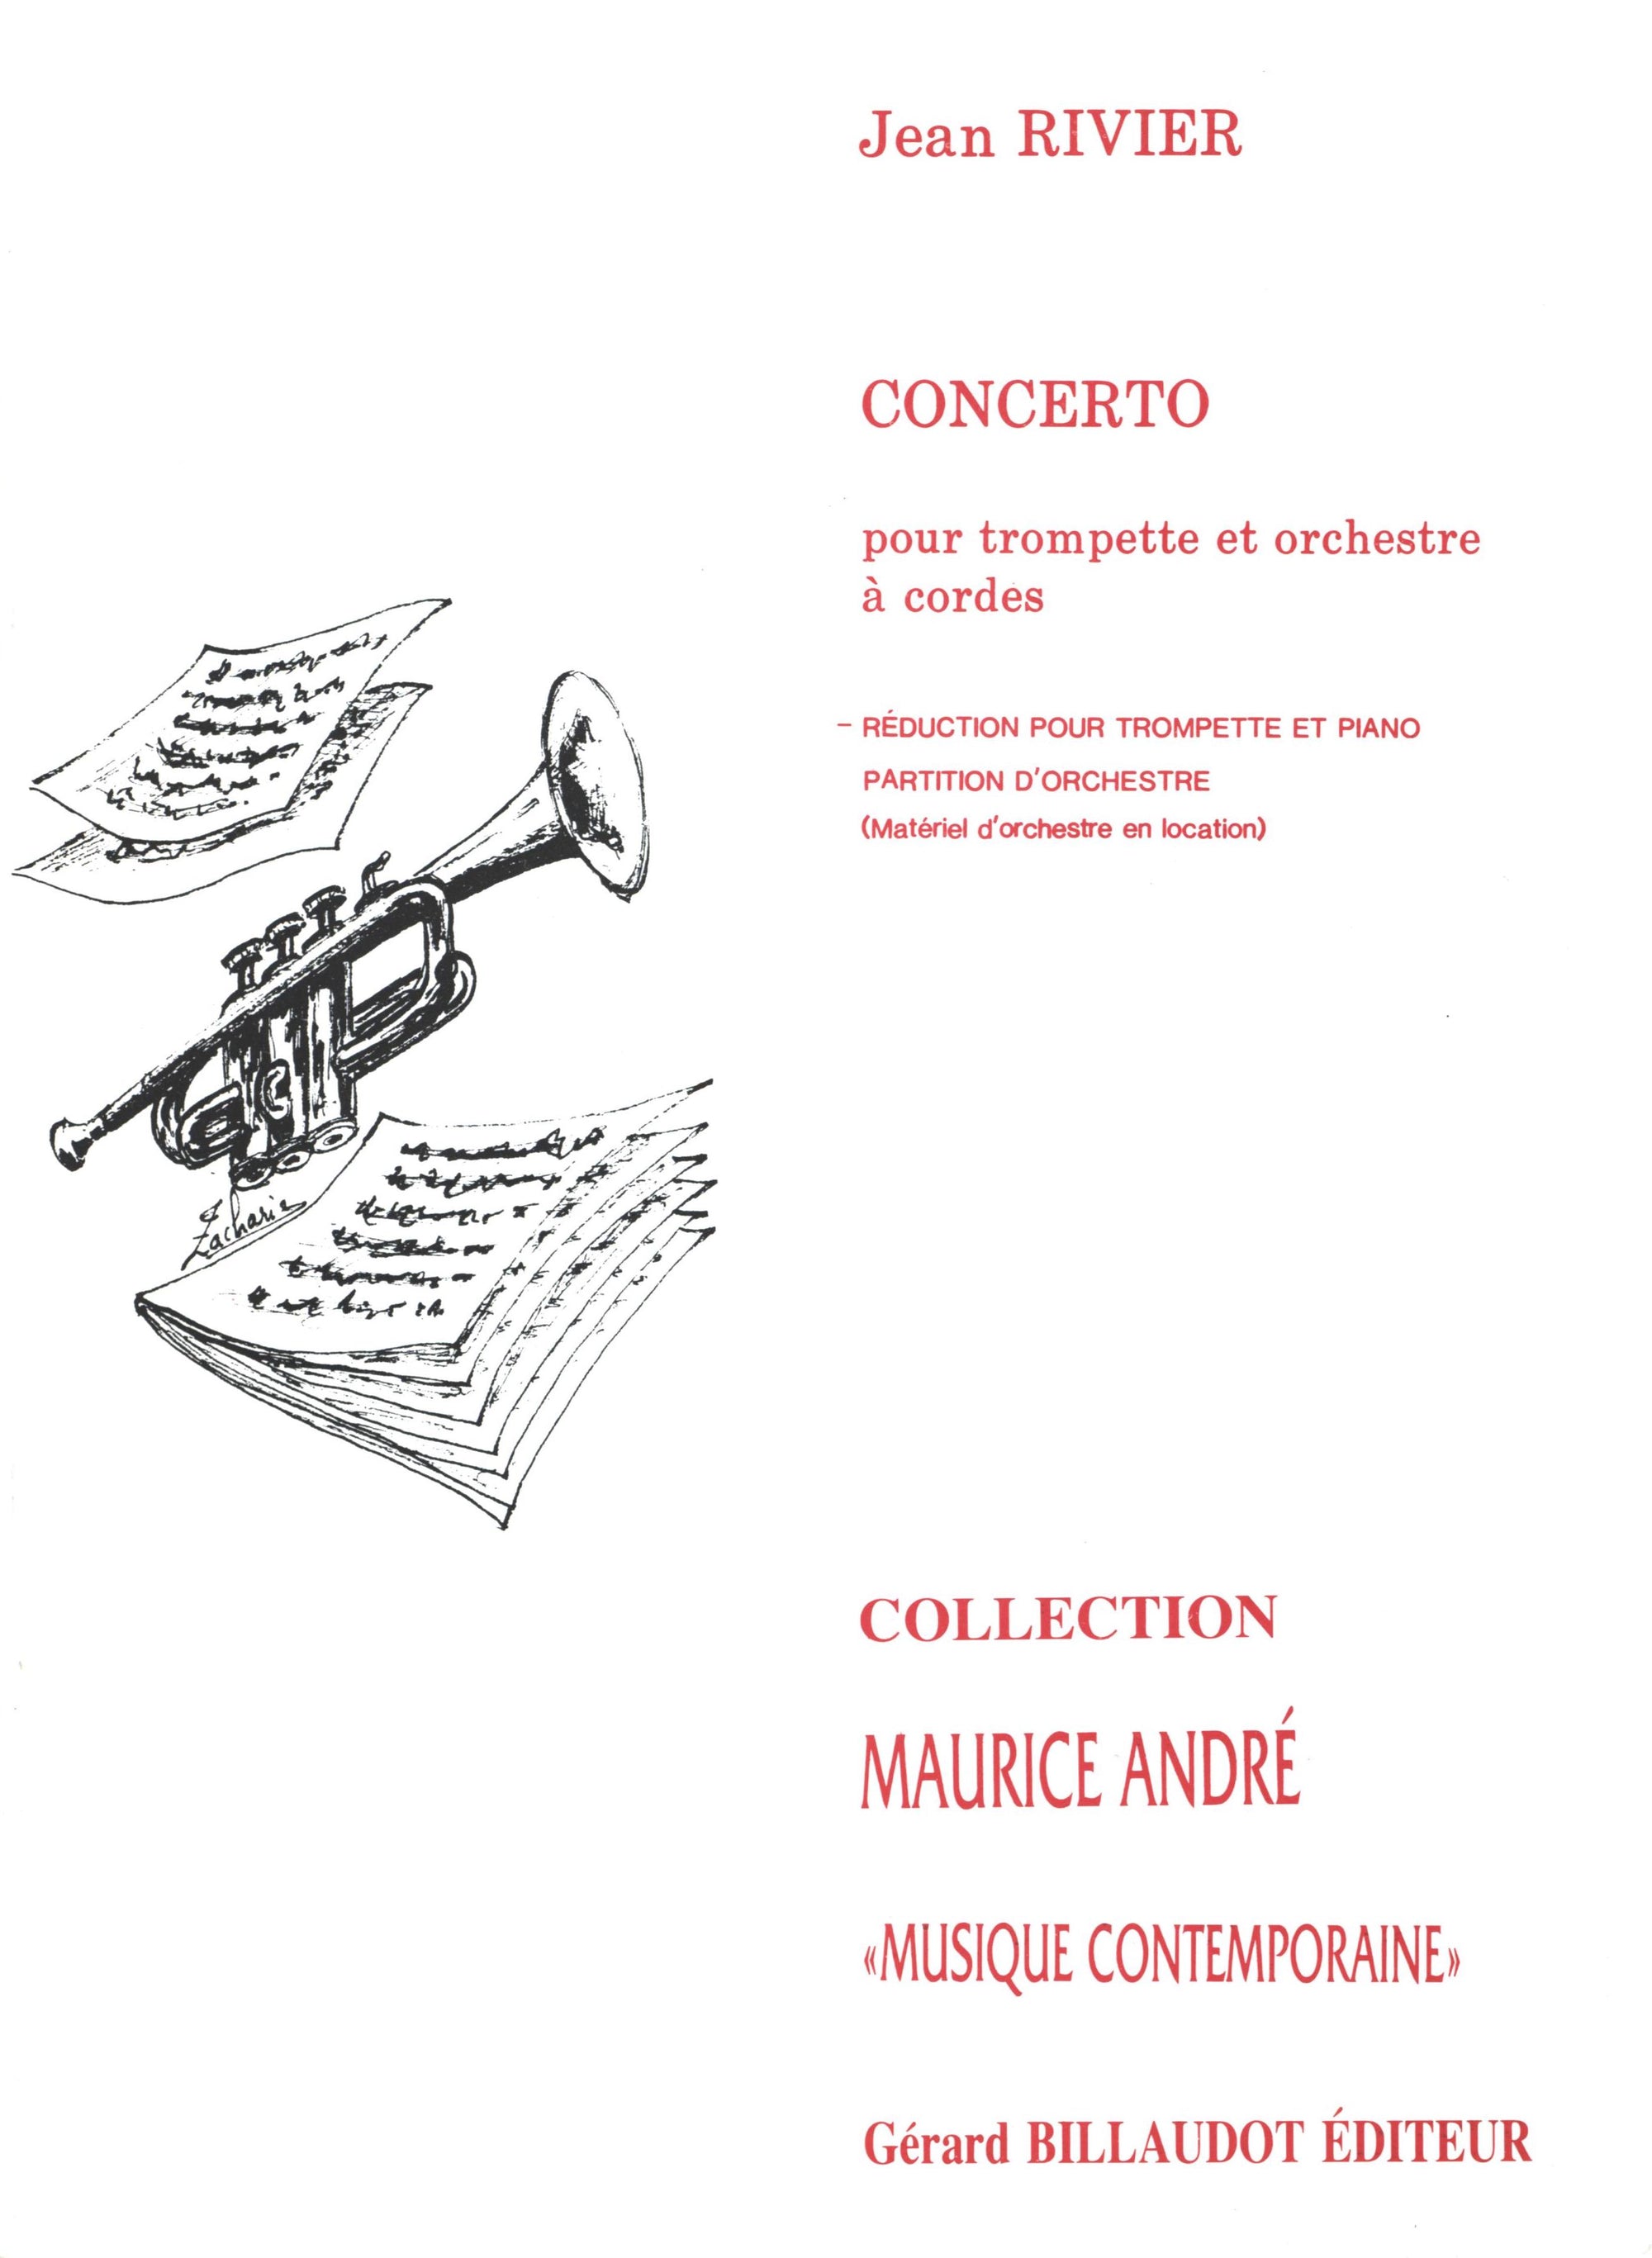 Rivier: Trumpet Concerto